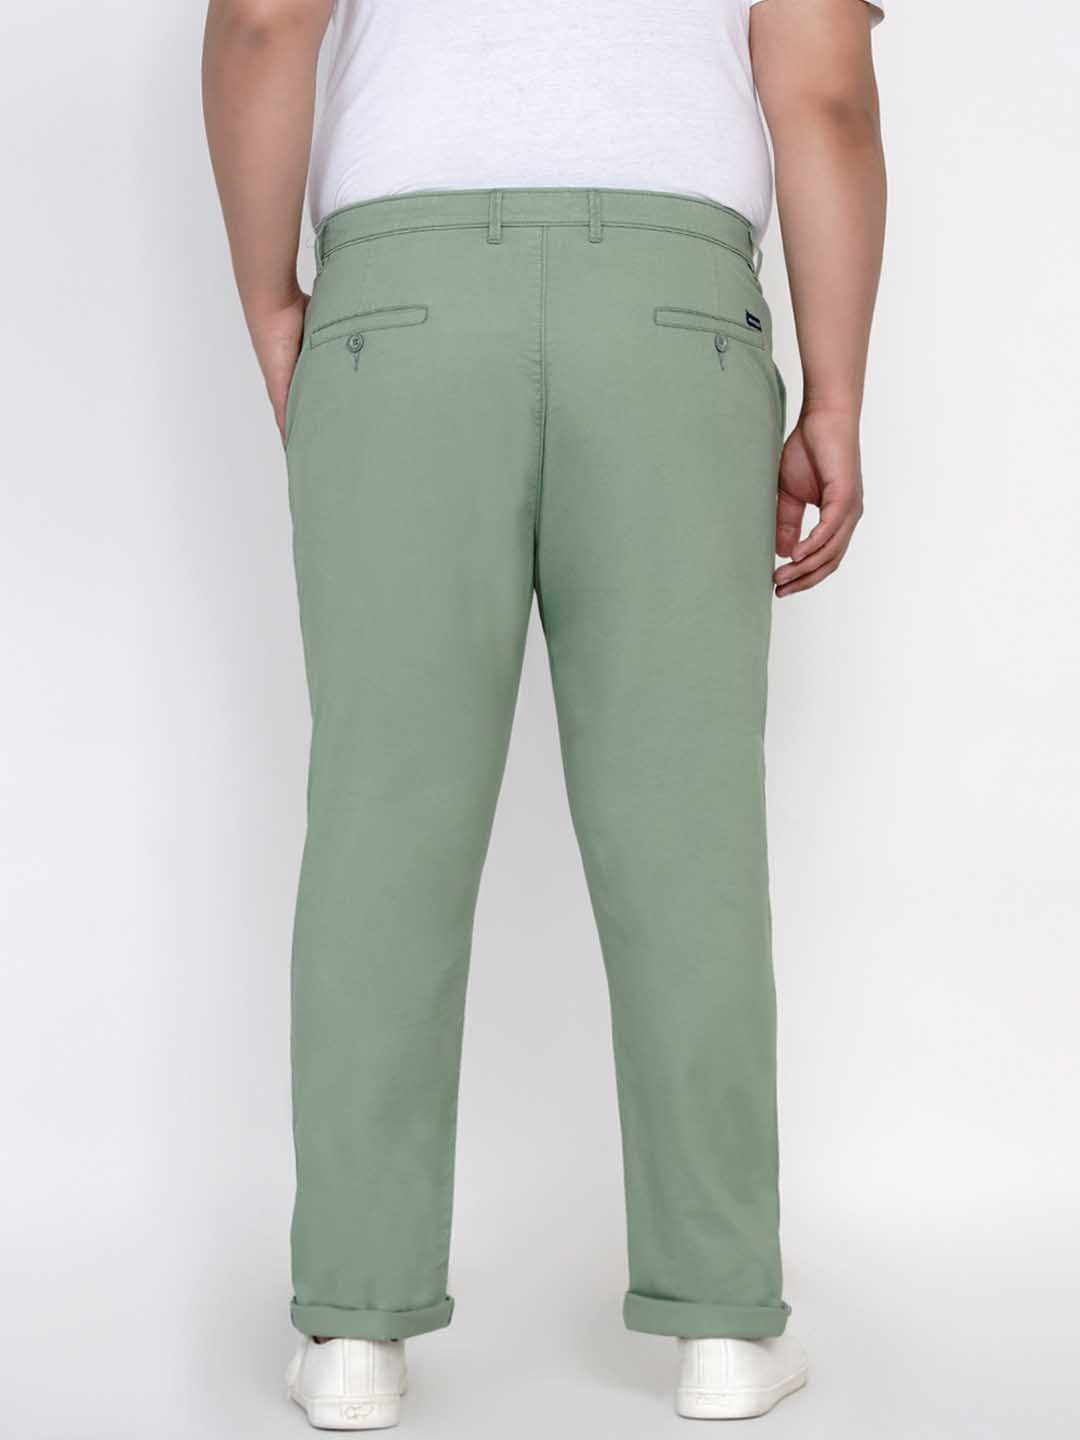 bottomwear/trousers/JPTR2195M/jptr2195m-4.jpg